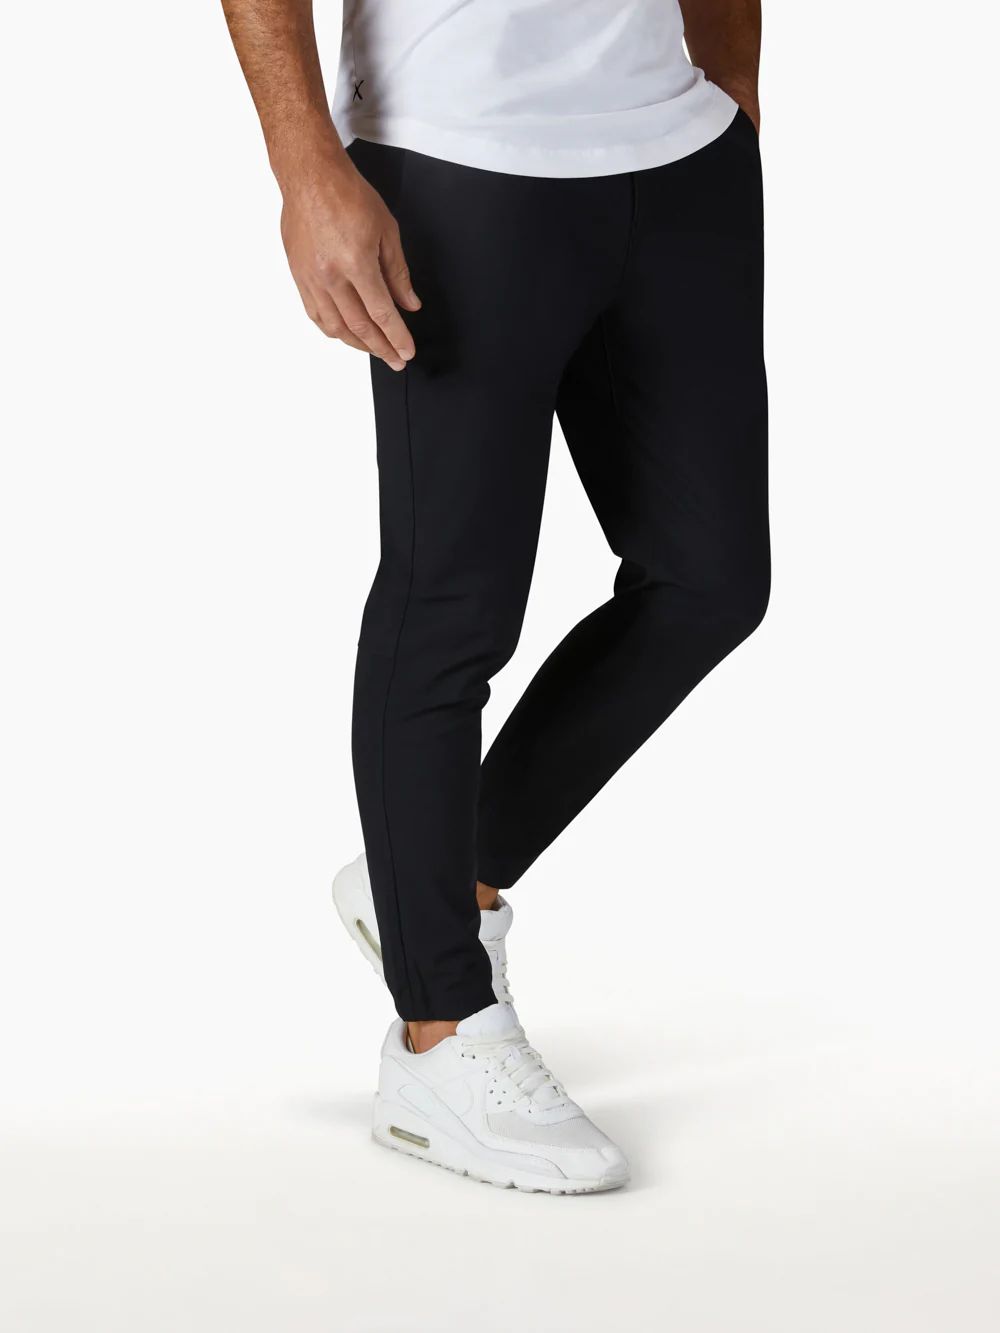 Men’s Black AO Joggers - Slim Fit | Cuts Clothing